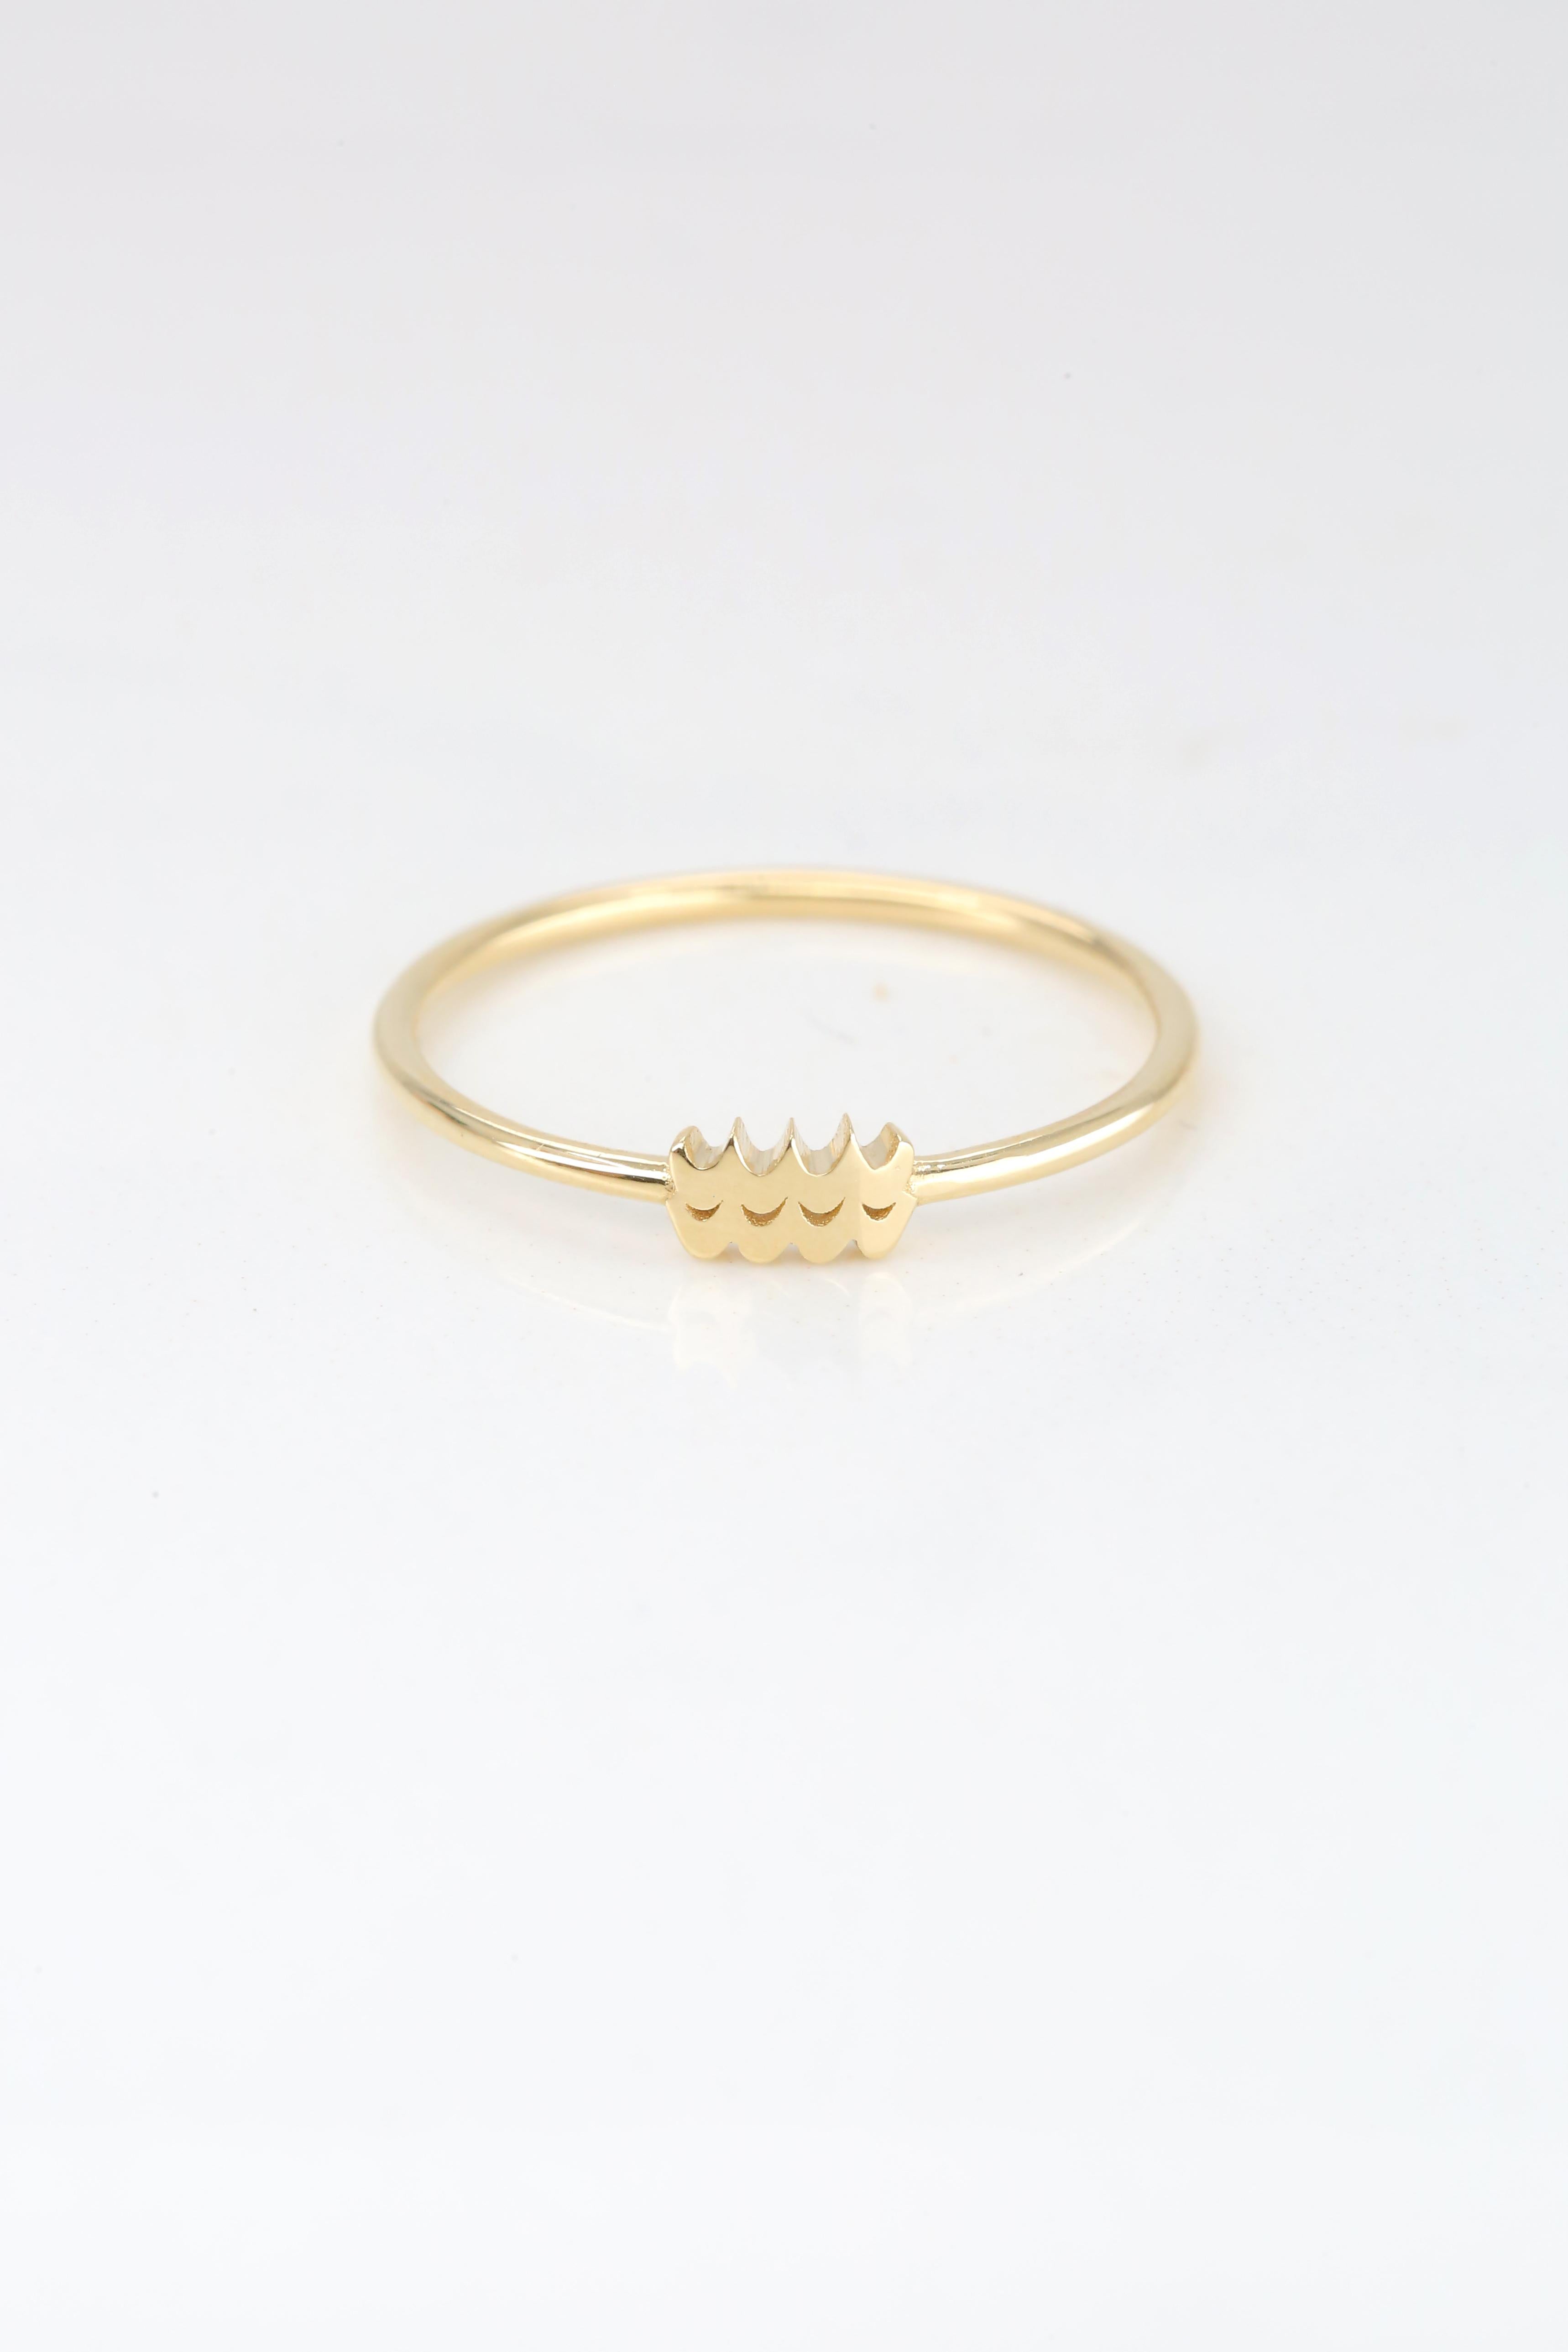 For Sale:  14K Gold Aquarius Ring, Aquarius Sign Gold Ring 5